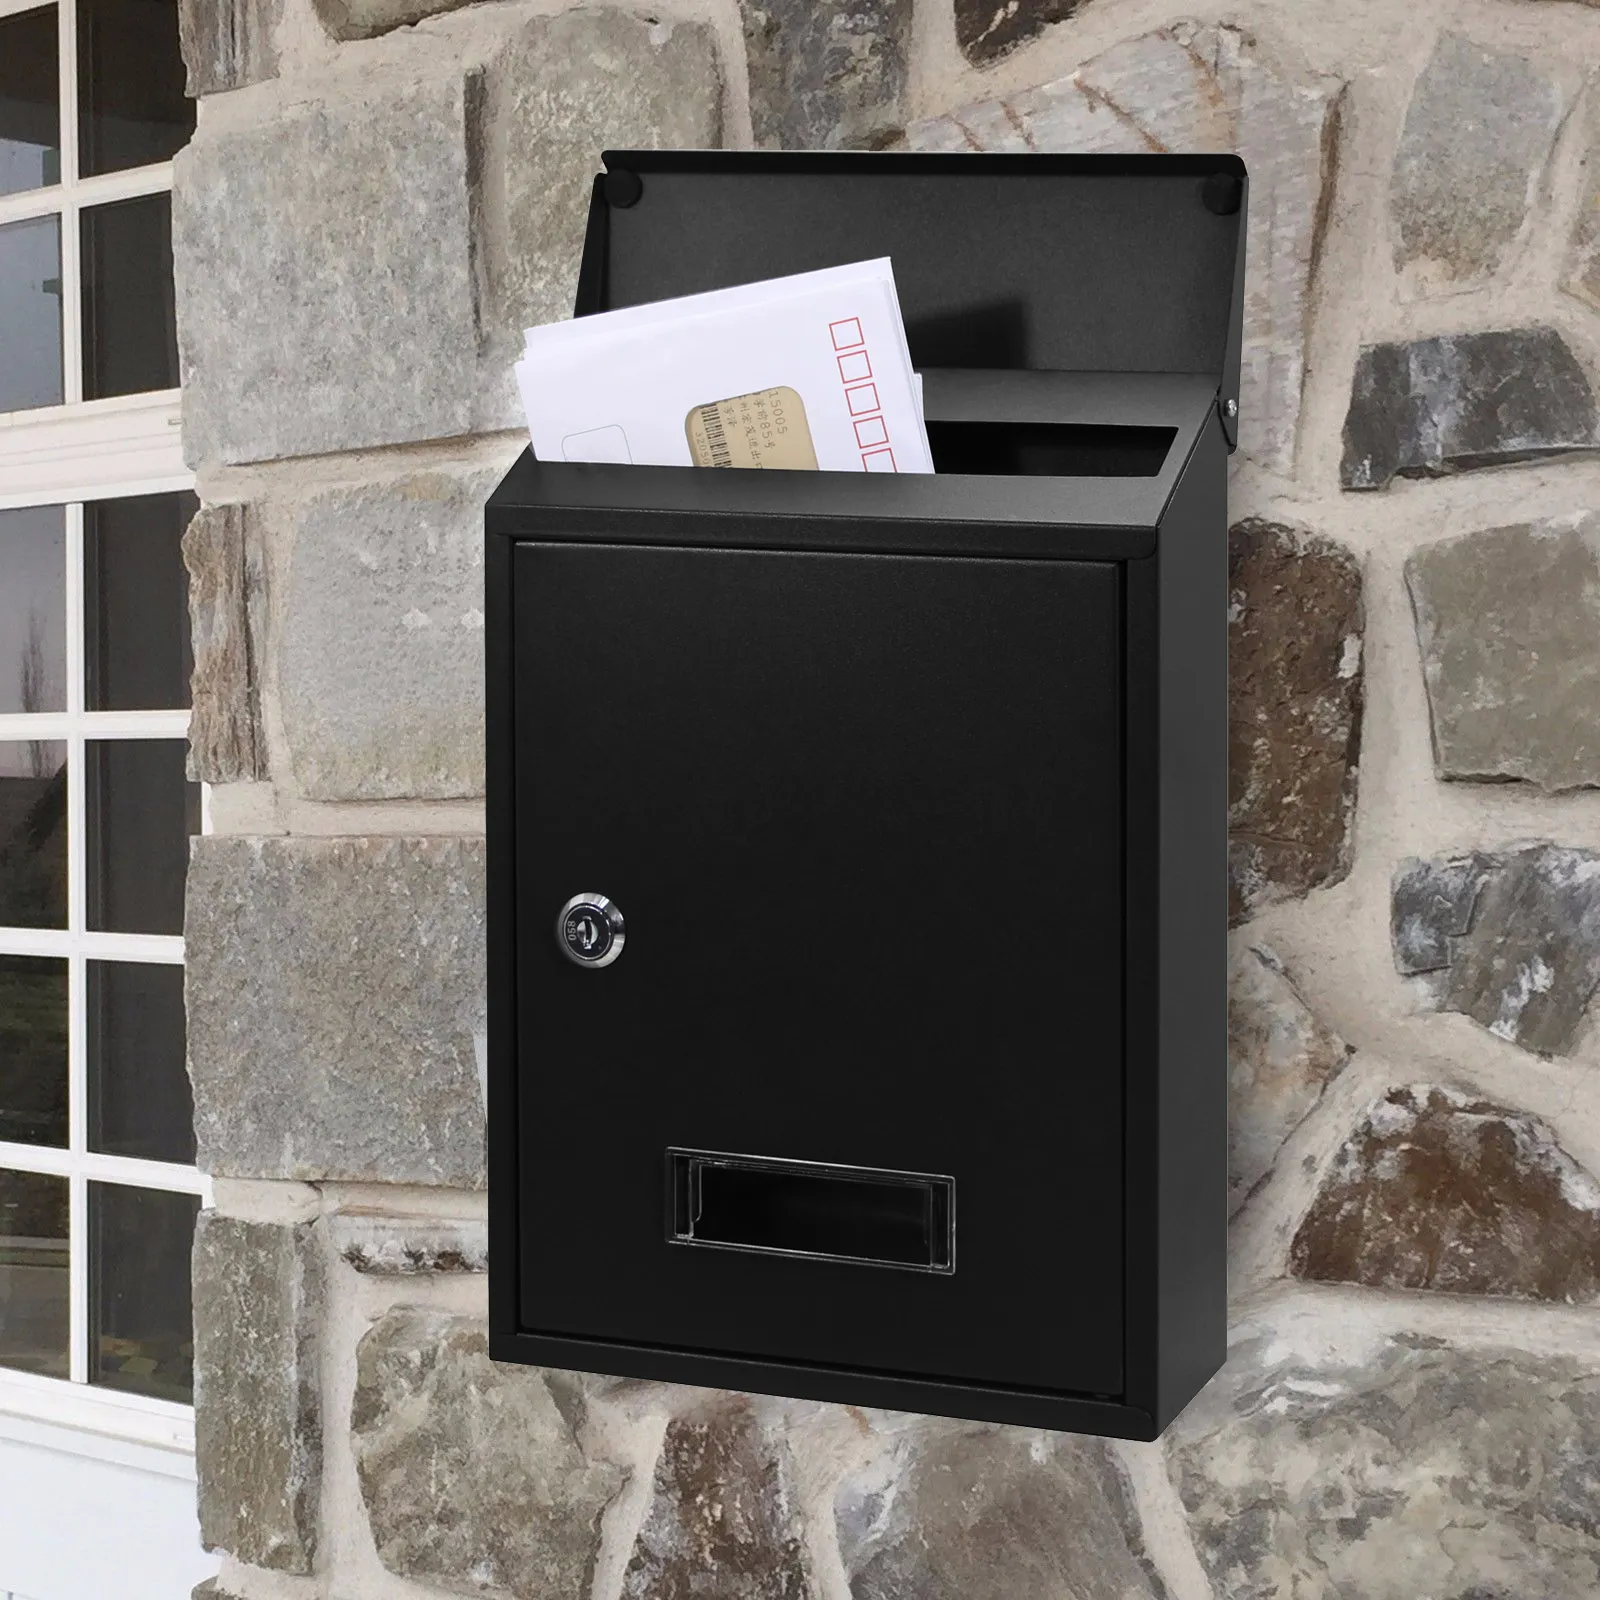 Kotak surat hitam Amerika dengan pos terpasang di dinding kotak surat bangunan